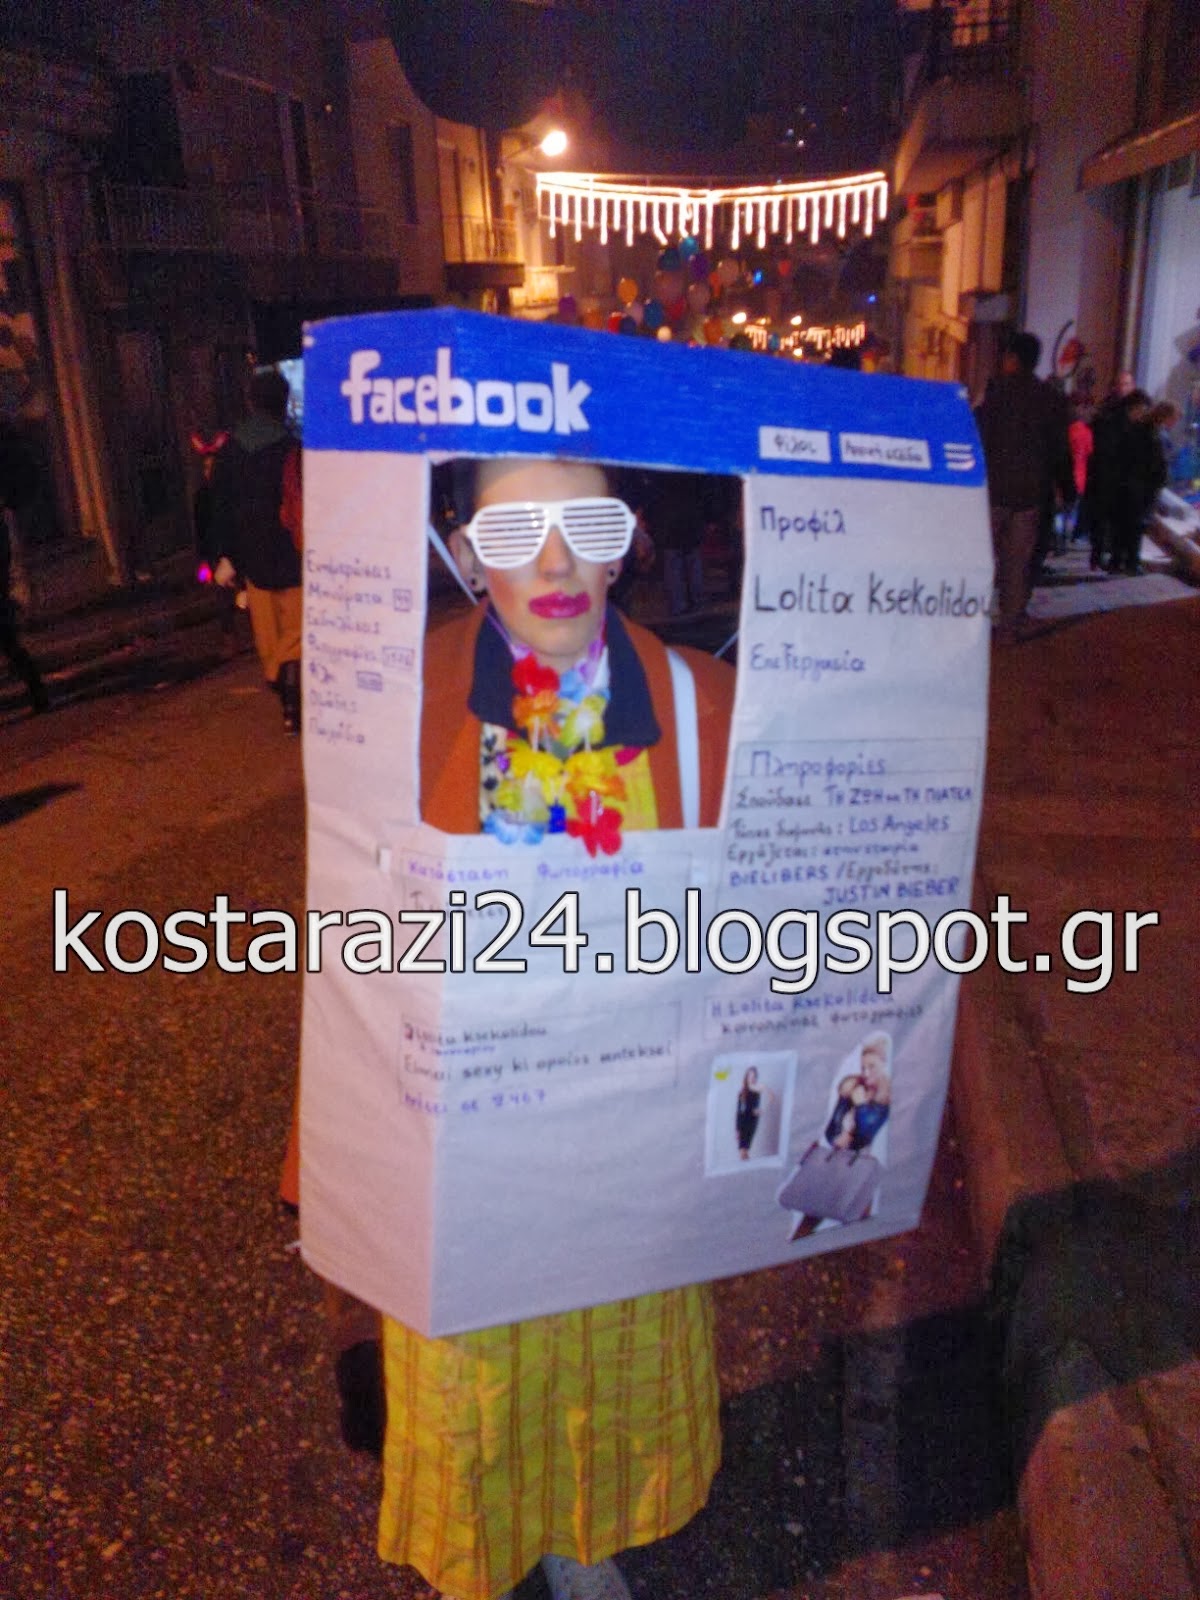 Το Facebook τώρα και σε στολή καρναβαλιού... Τη βρήκαμε στα Ραγκουτσάρια! - Φωτογραφία 2